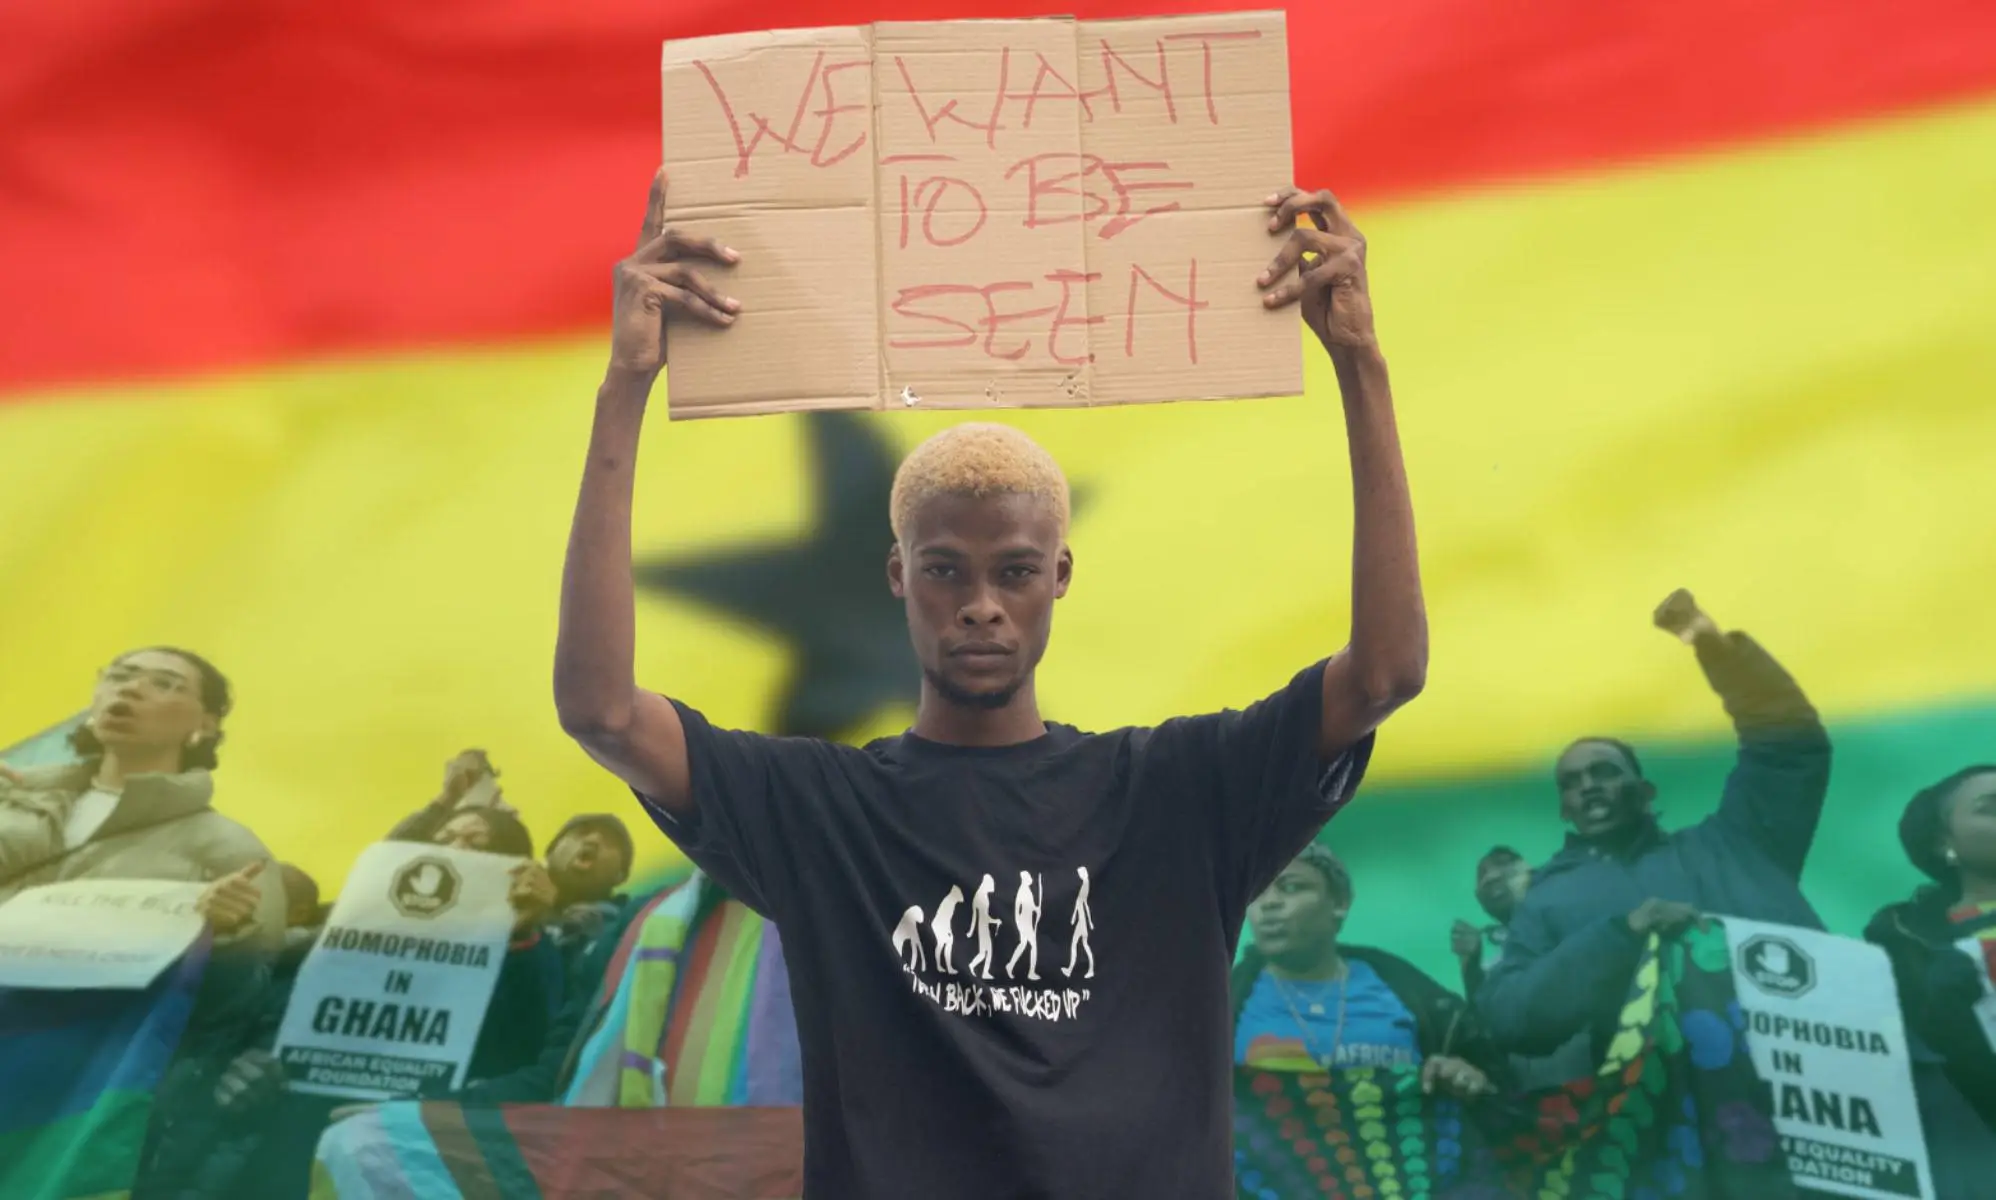 El proyecto de ley anti-LGBTQ+ de Ghana podría desencadenar una "caza de brujas" contra las personas queer, según un activista